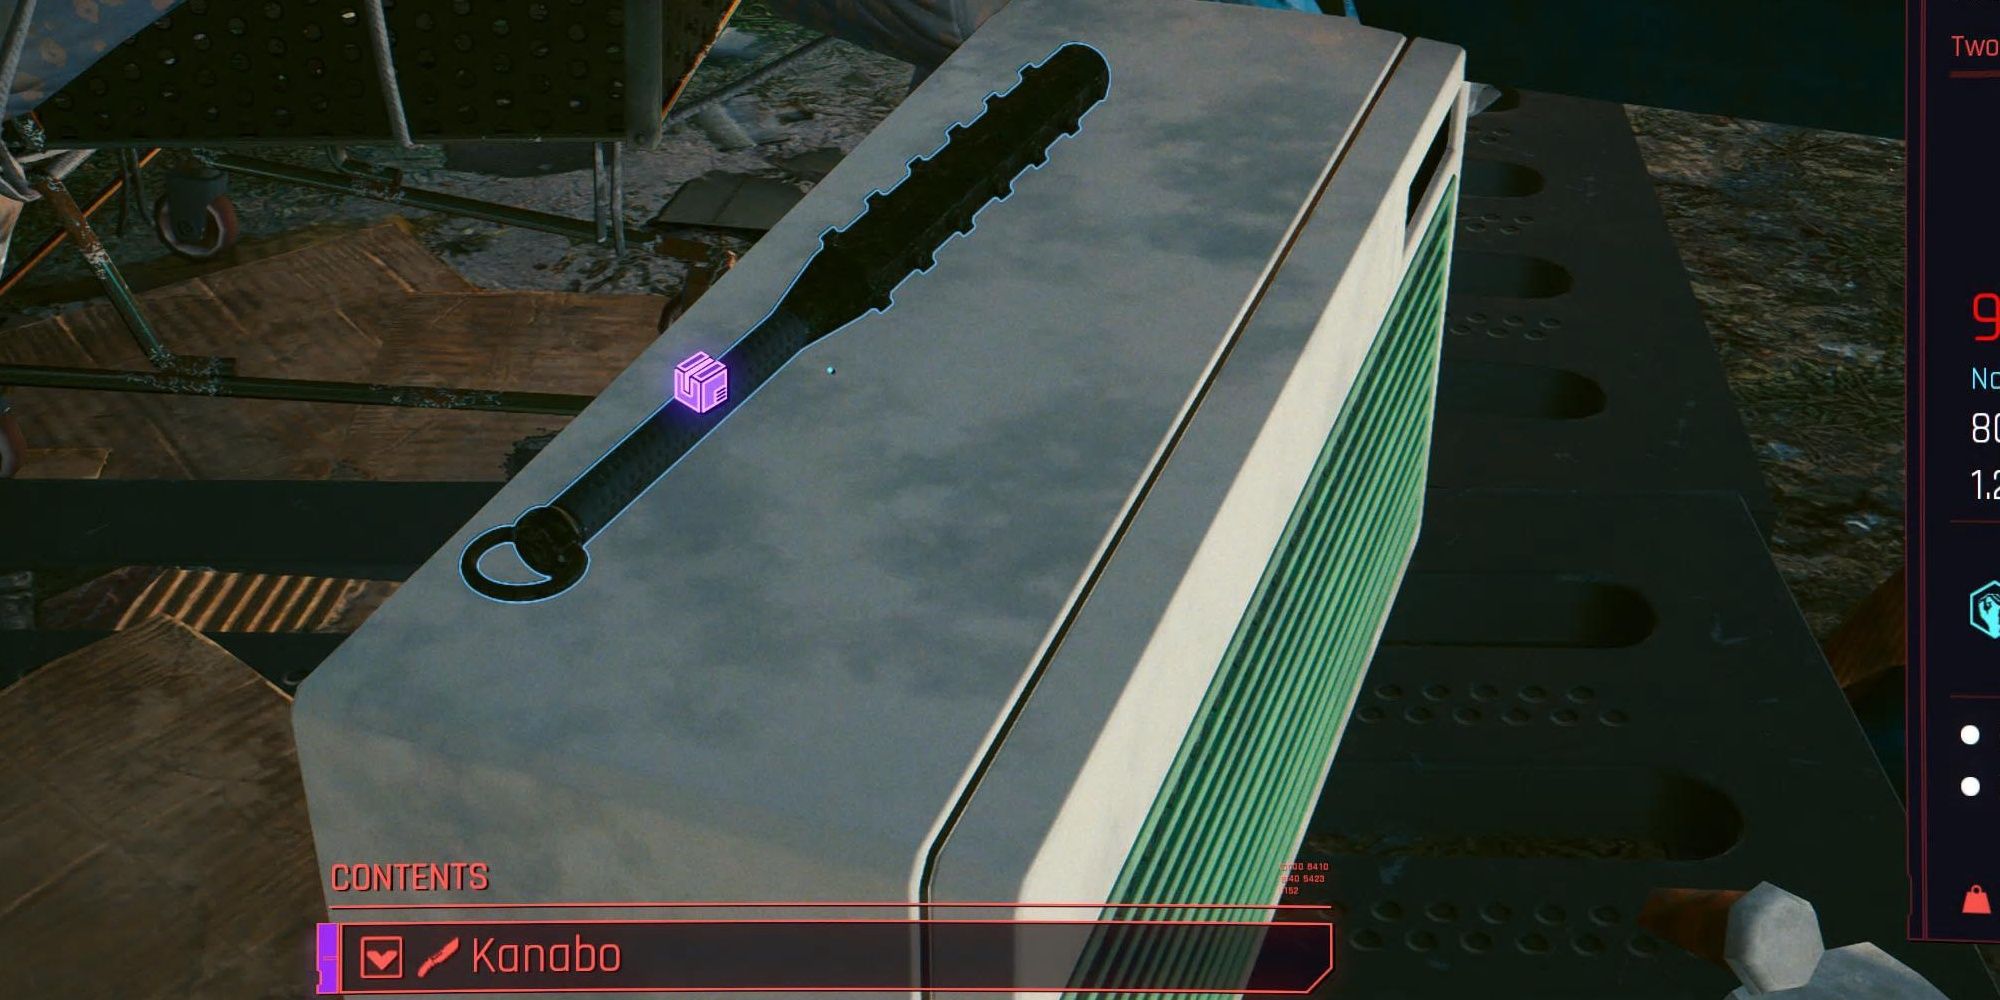 Kanabo blunt weapon in Cyberpunk 2077